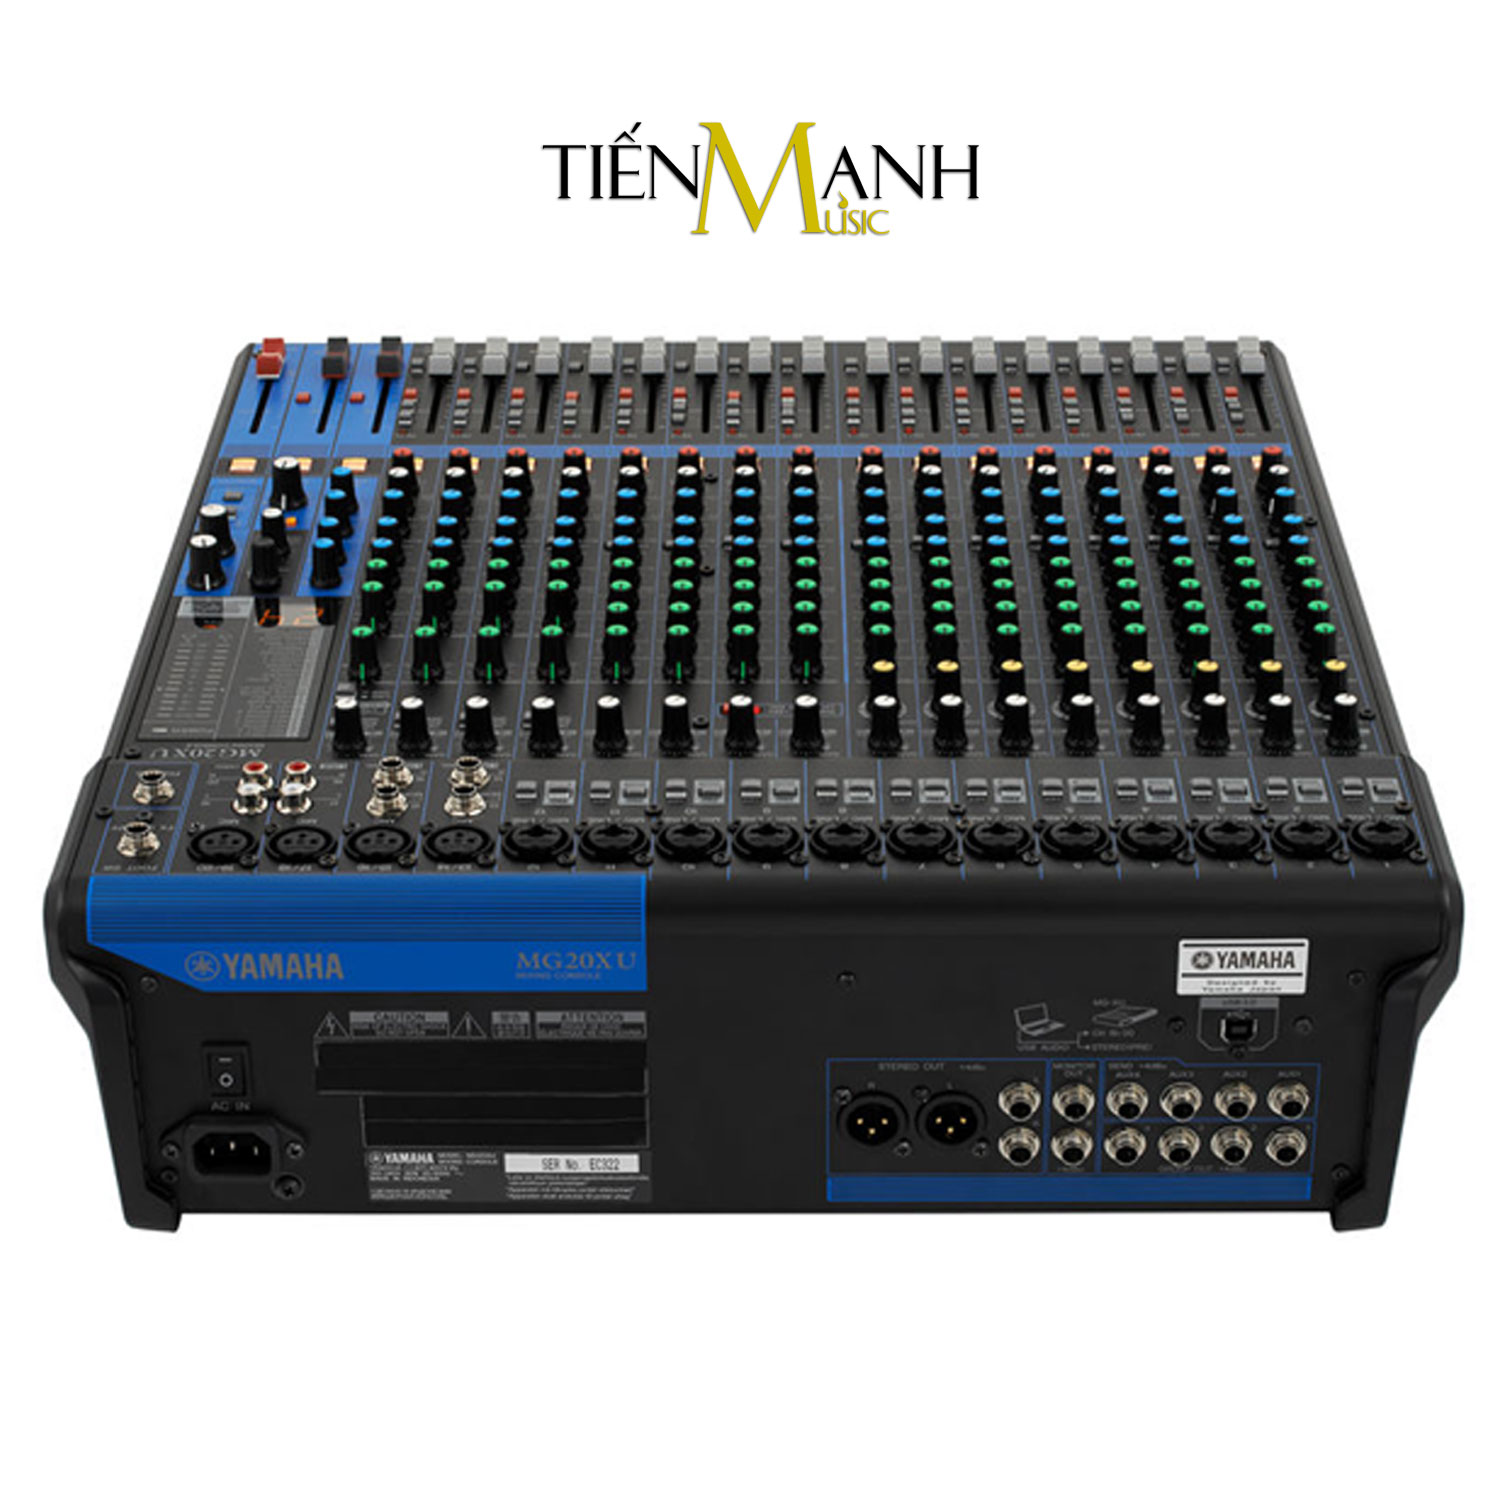 Yamaha MG20XU Soundcard kiêm Bàn Trộn Mixer Interface Stereo Mixing Phòng Thu Studio Mix MG20 Hàng Chính Hãng - Kèm Móng Gẩy DreamMaker